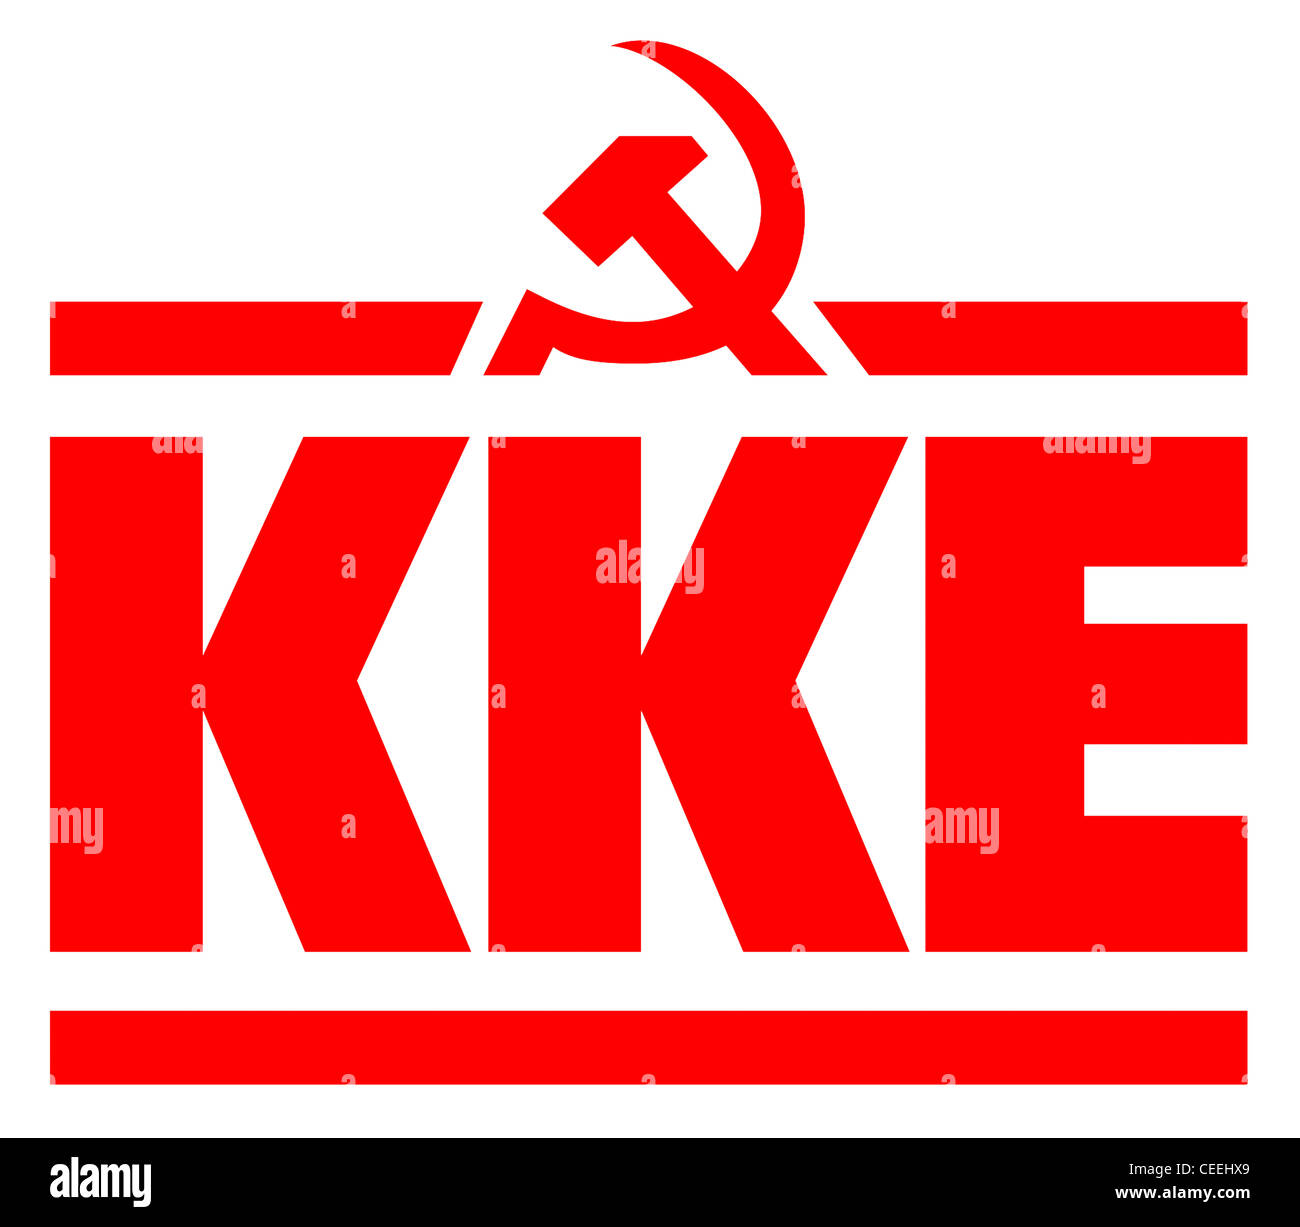 Il logo del partito comunista di Grecia KKE. Foto Stock